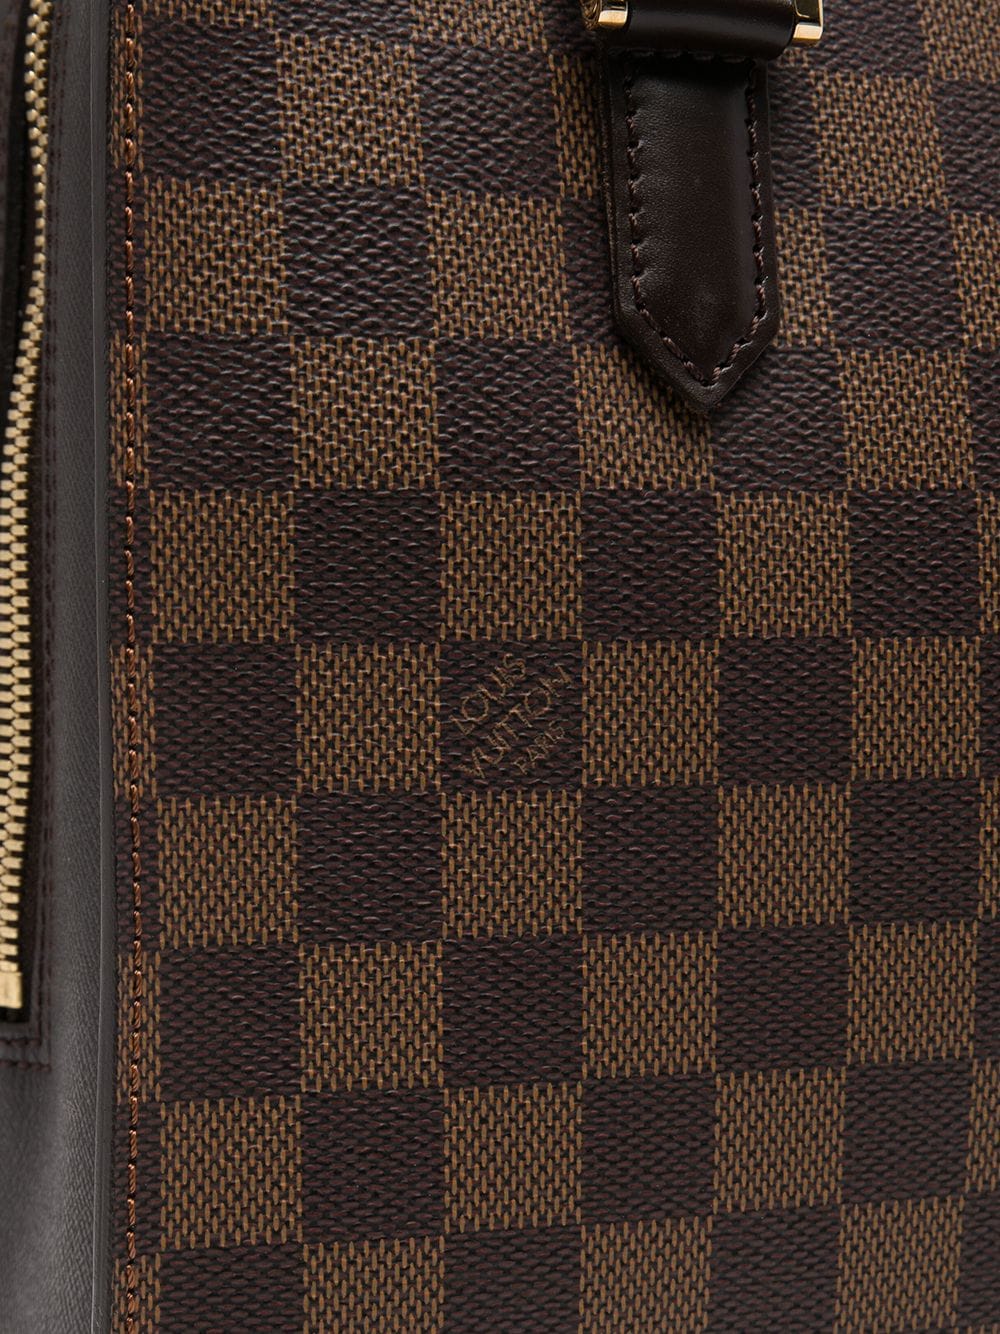 Louis Vuitton 2000s pre-owned Damier Ebène Triana Handbag - Farfetch